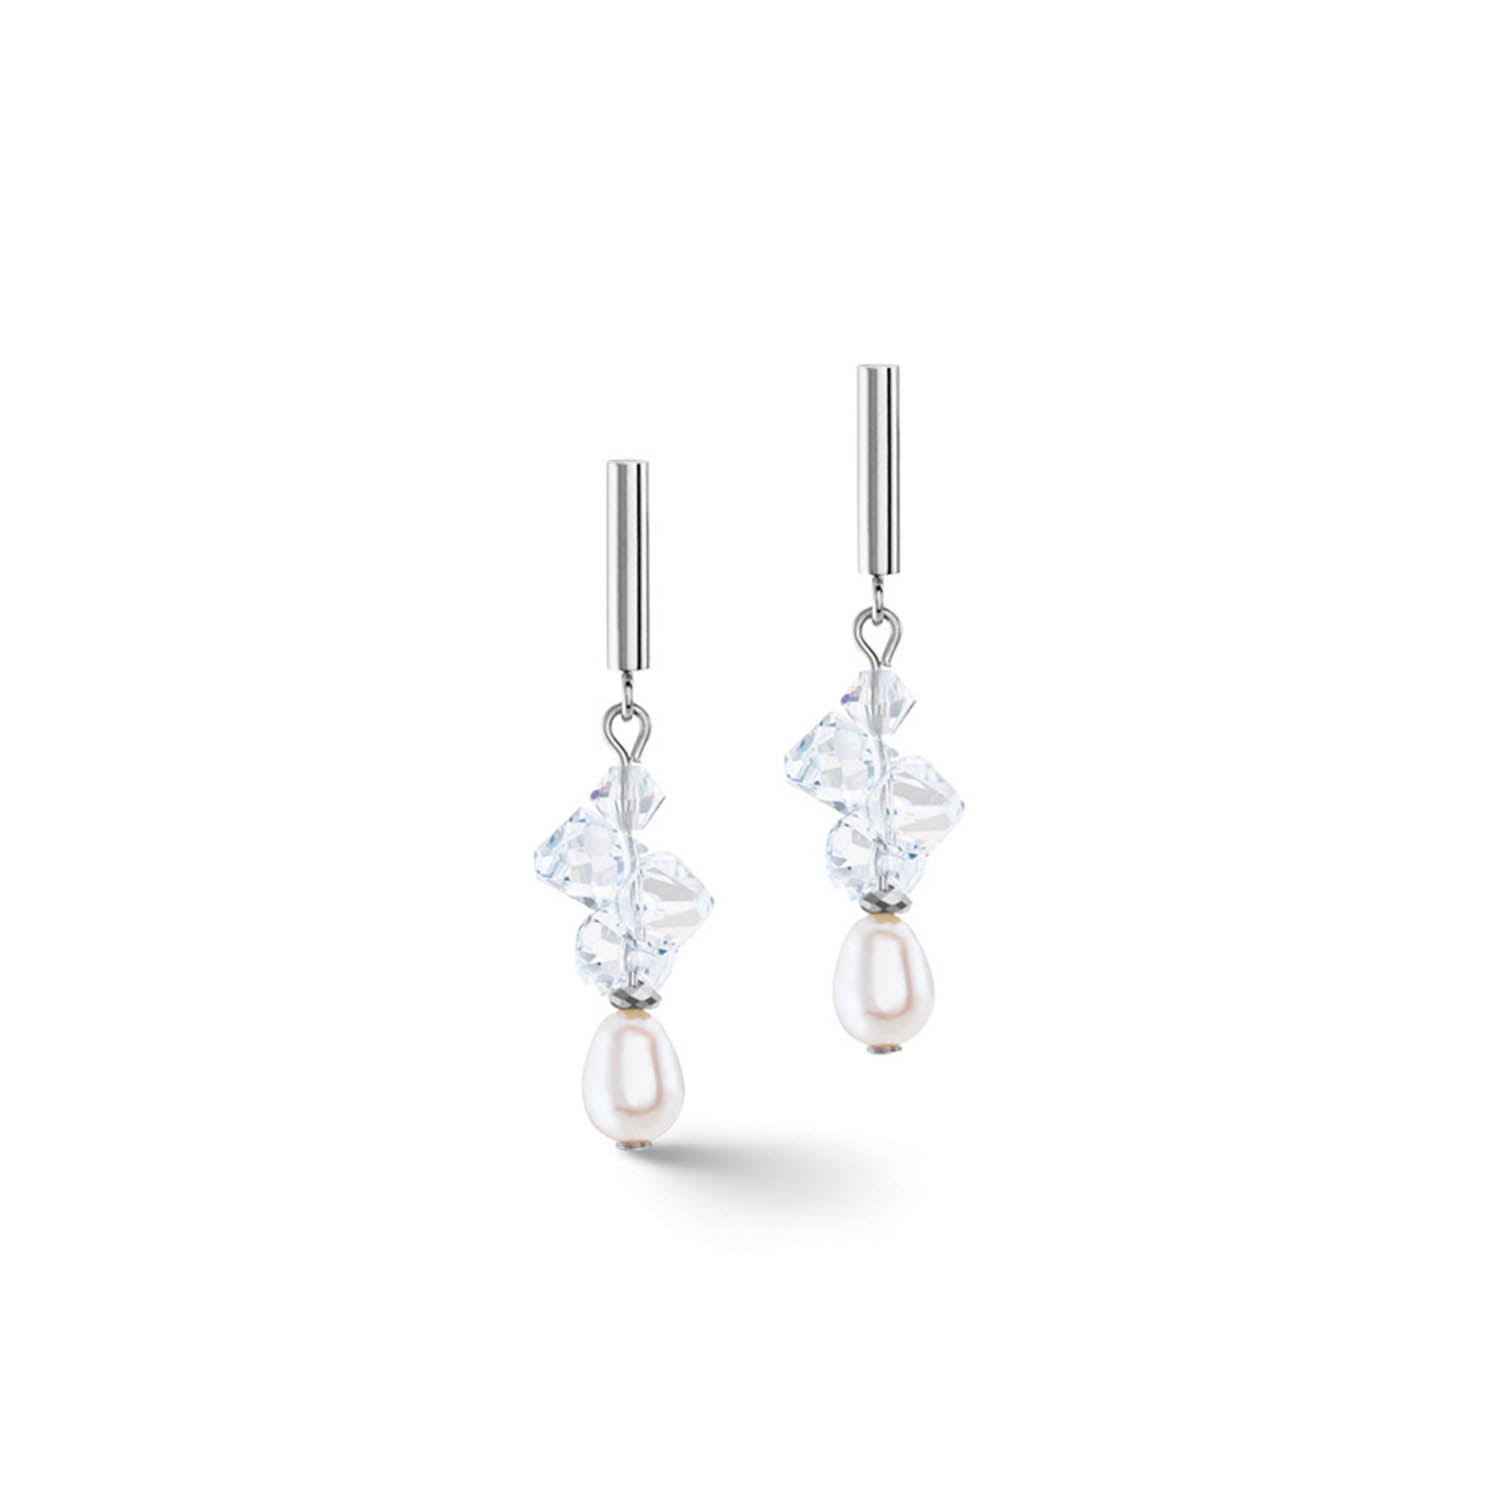 Dancing Crystals & Pearls Silver Earrings 1124/21_1417